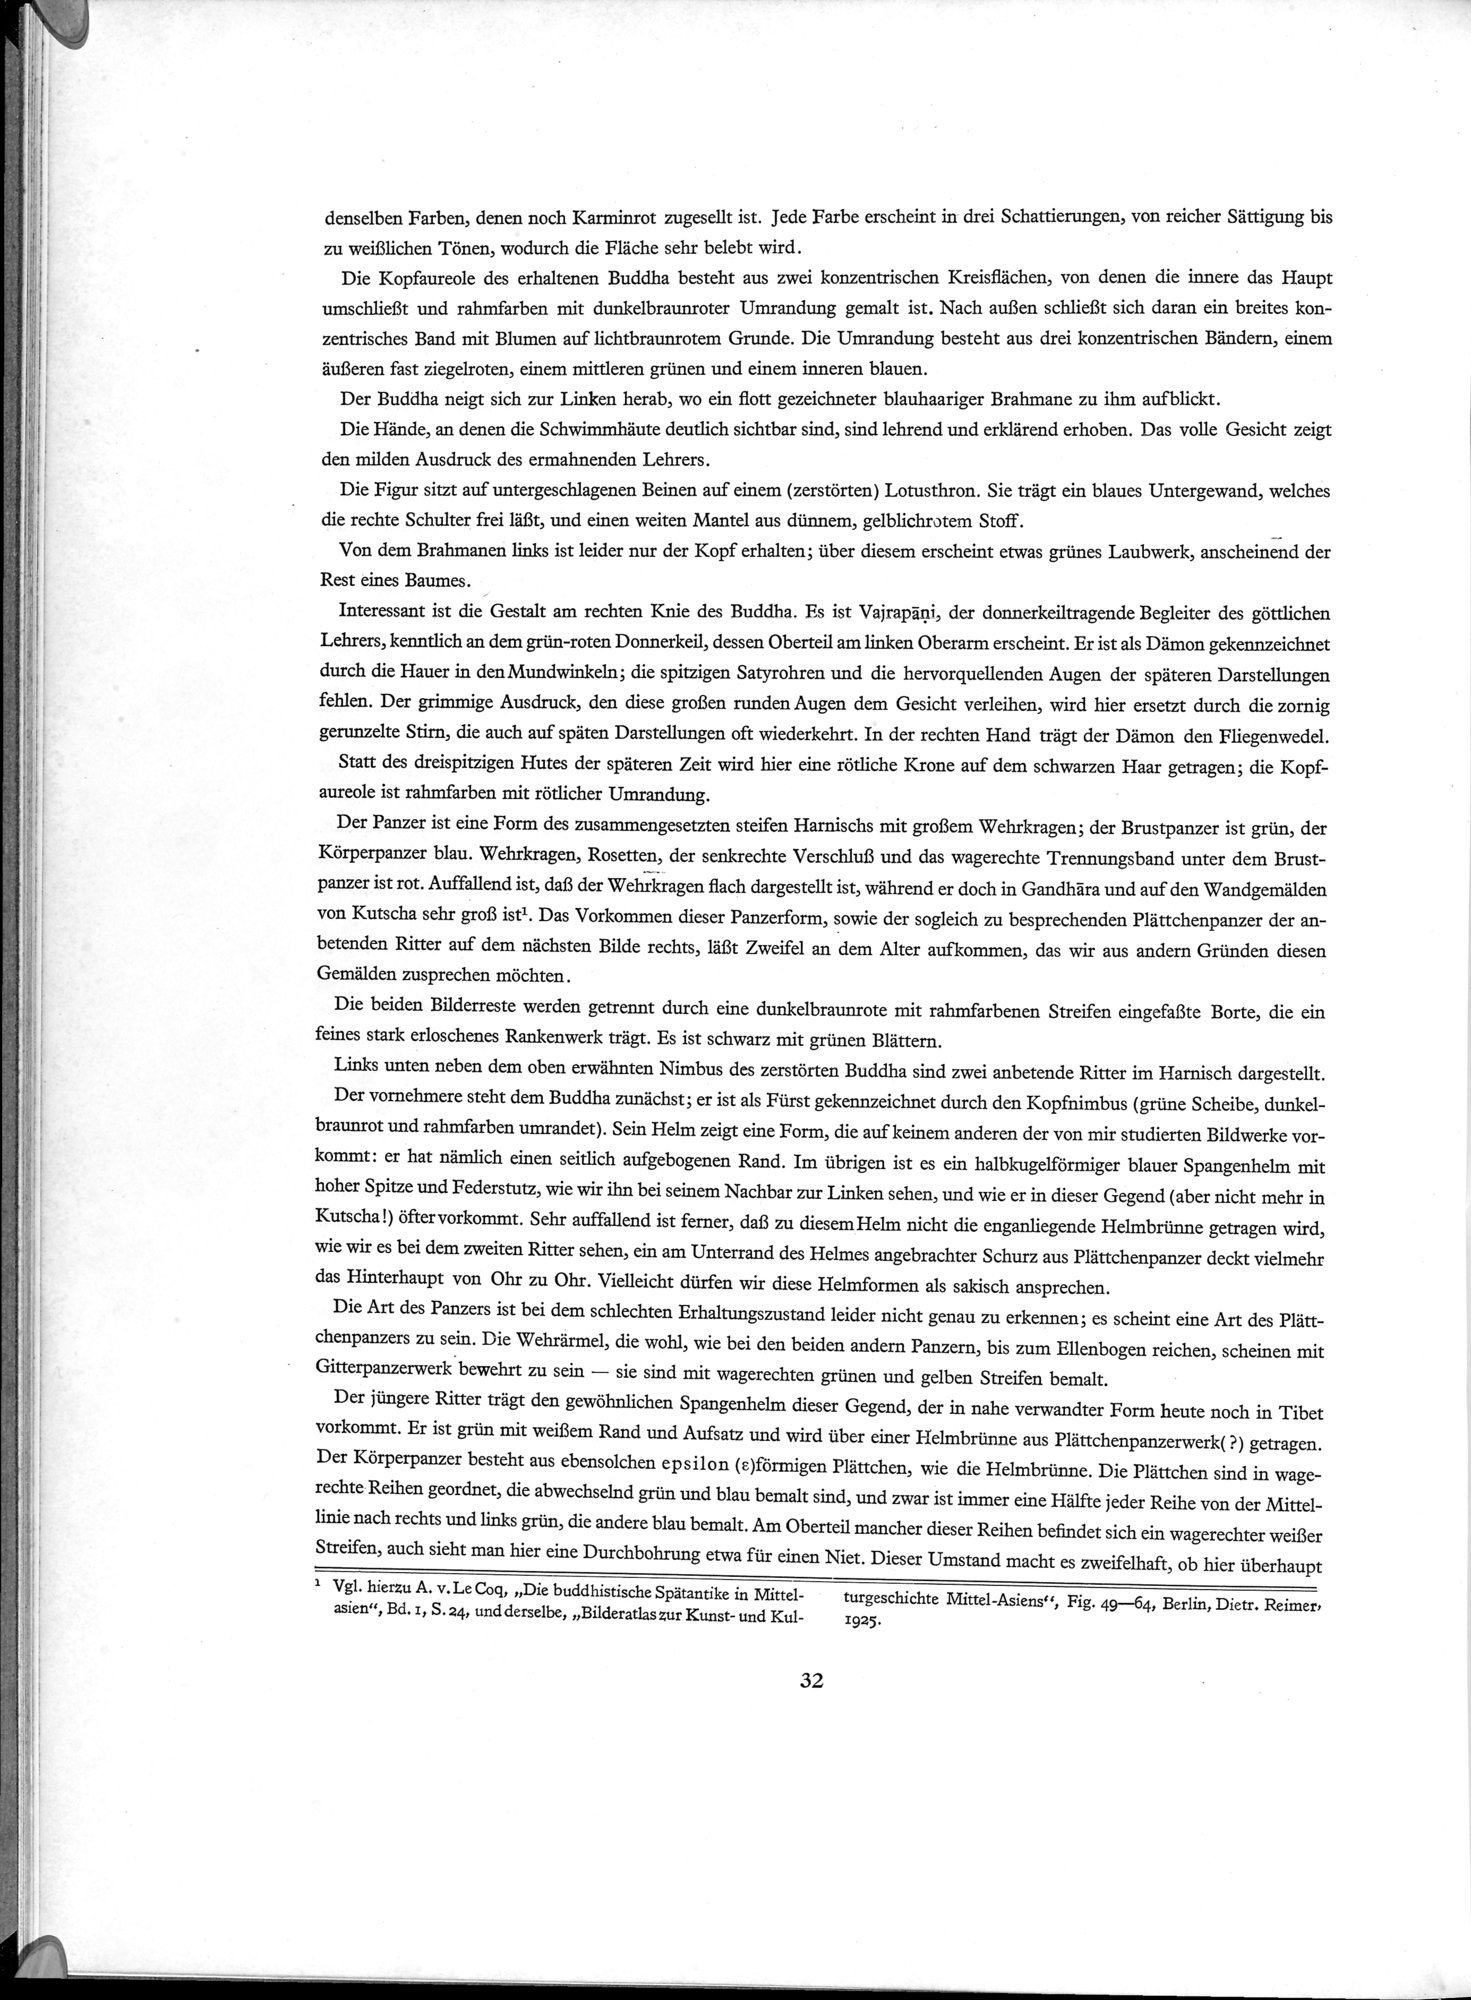 Die Buddhistische Spätantike in Mittelasien : vol.5 / Page 42 (Grayscale High Resolution Image)